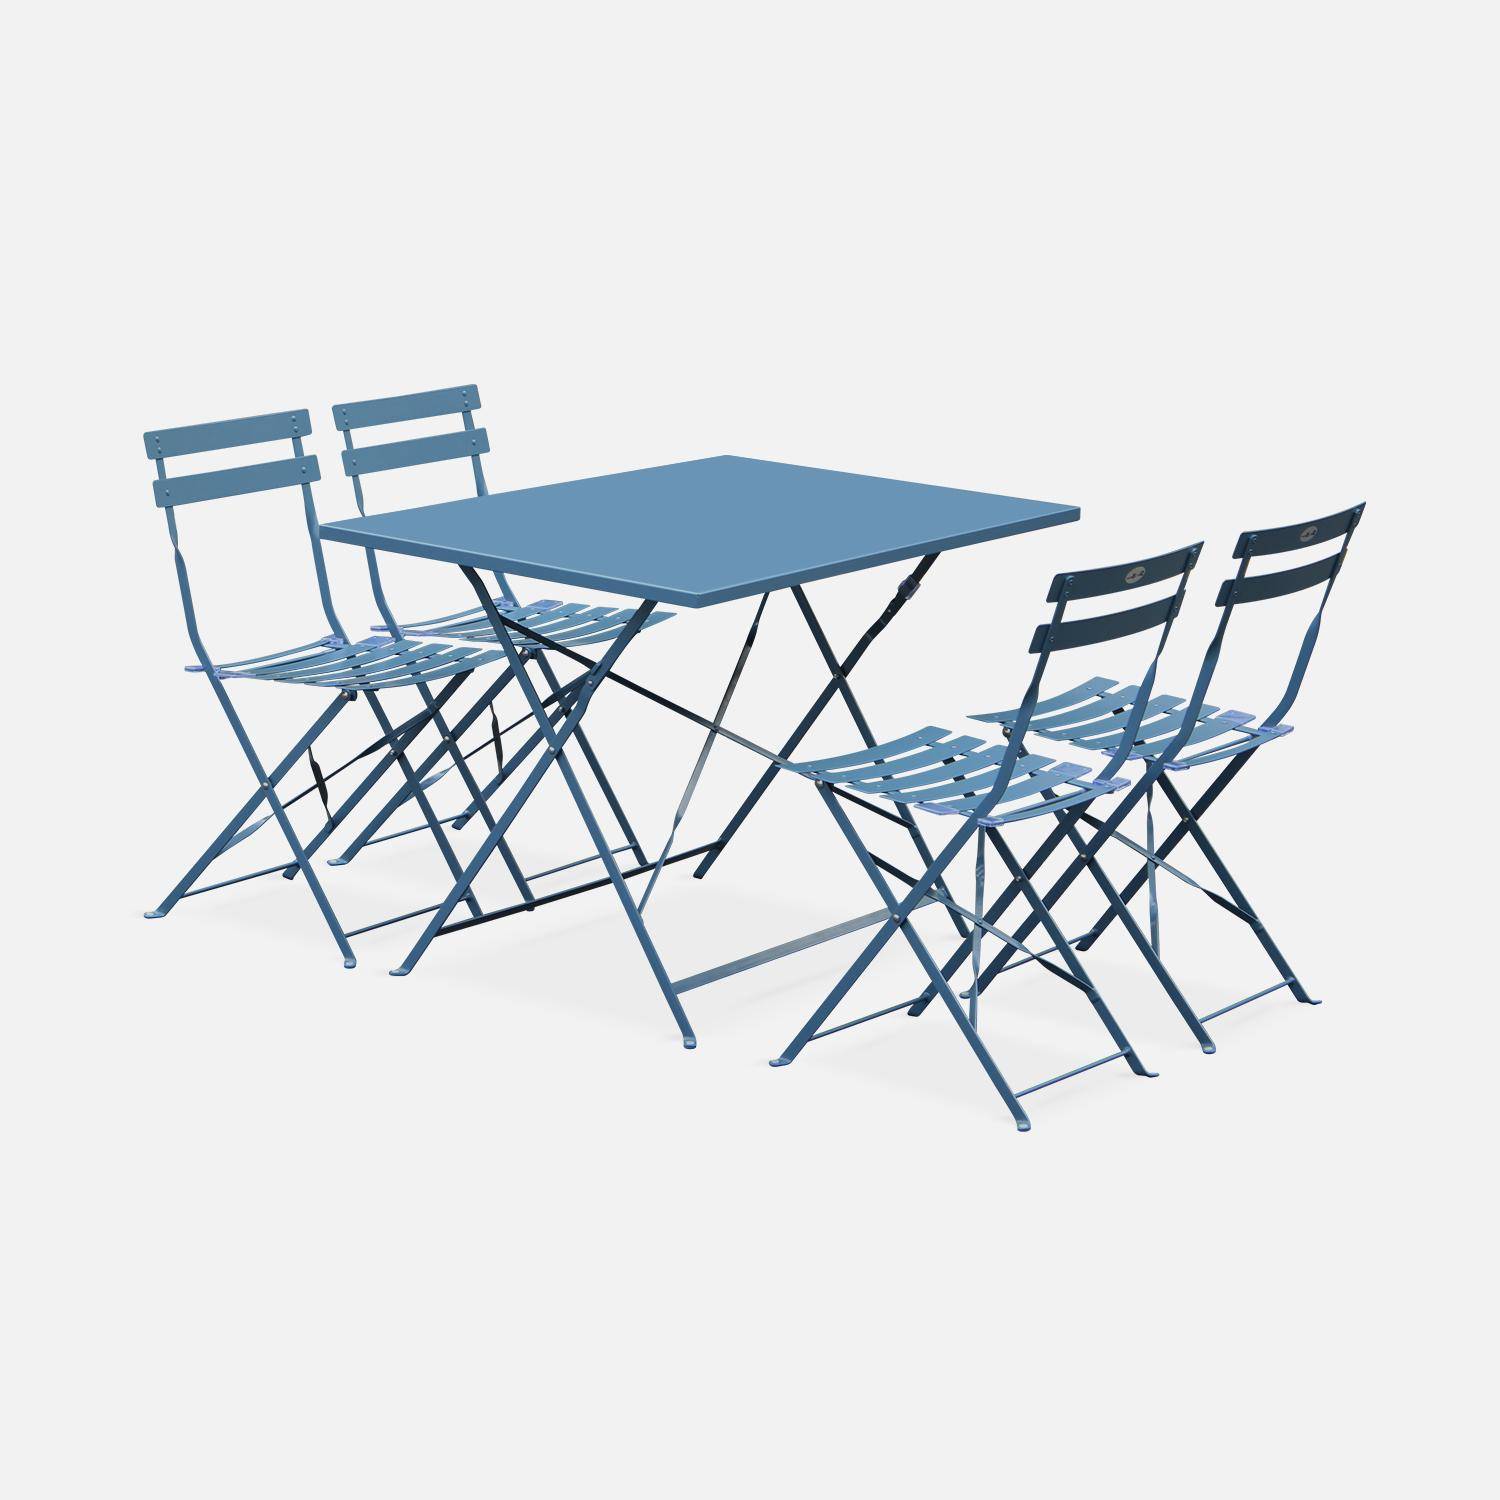 Salotto da giardino, bistrot, pieghevole - modello: Emilia, rettangolare, colore: Blu ombreggiato - Tavolo, dimensioni: 110x70cm, con quattro sedie pieghevoli, acciaio termolaccato Photo2